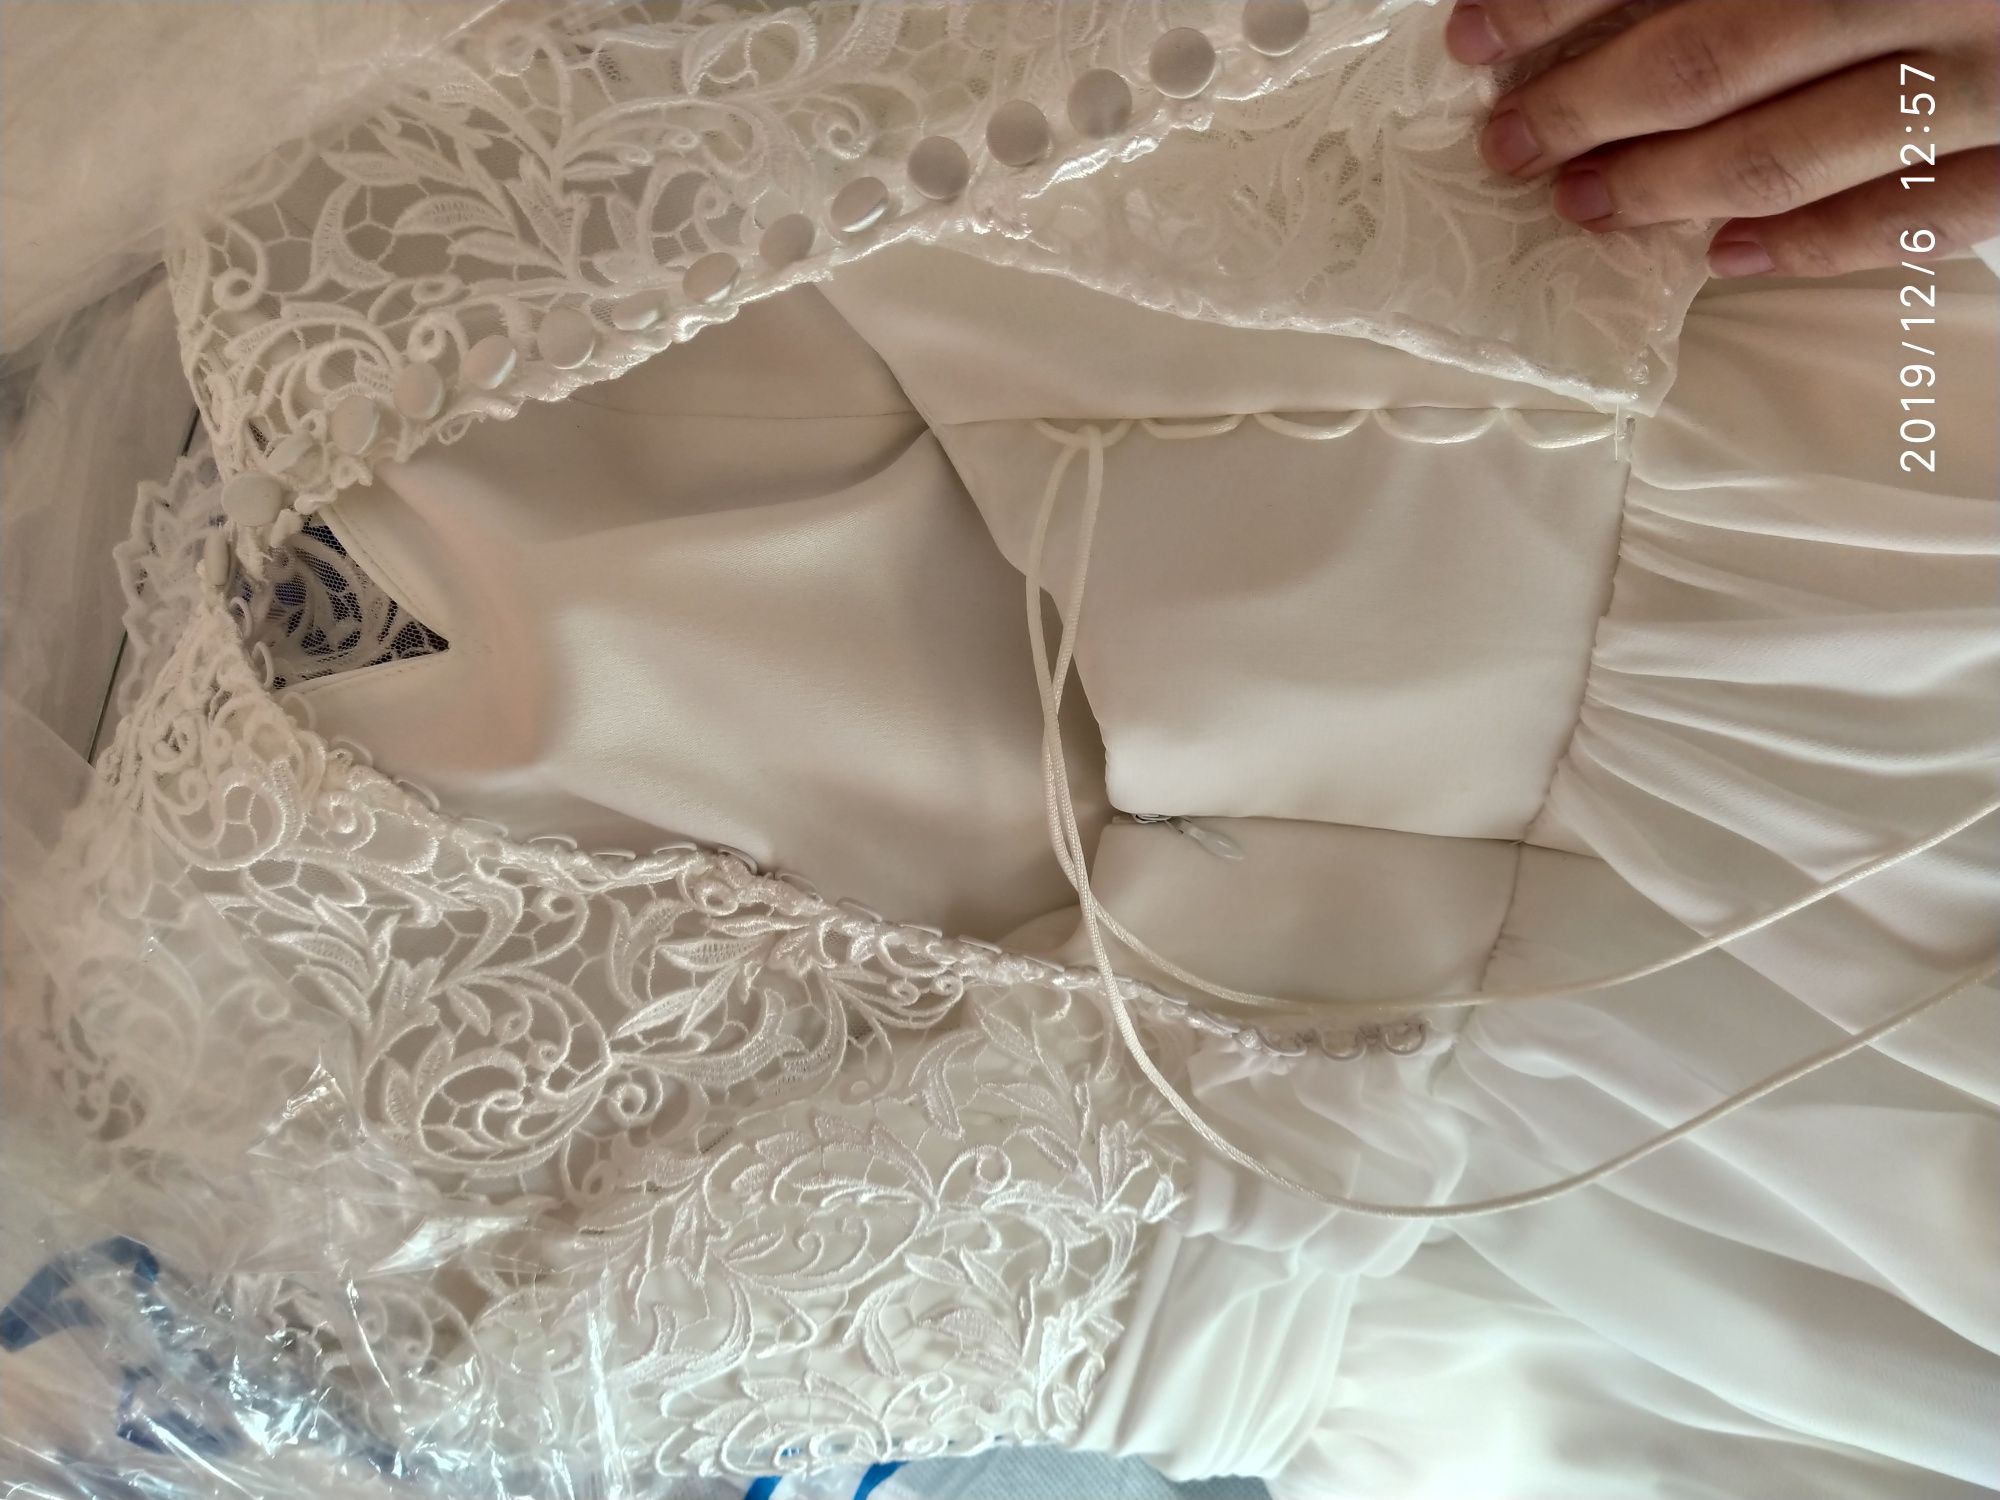 Весільне плаття / Весільна сукня